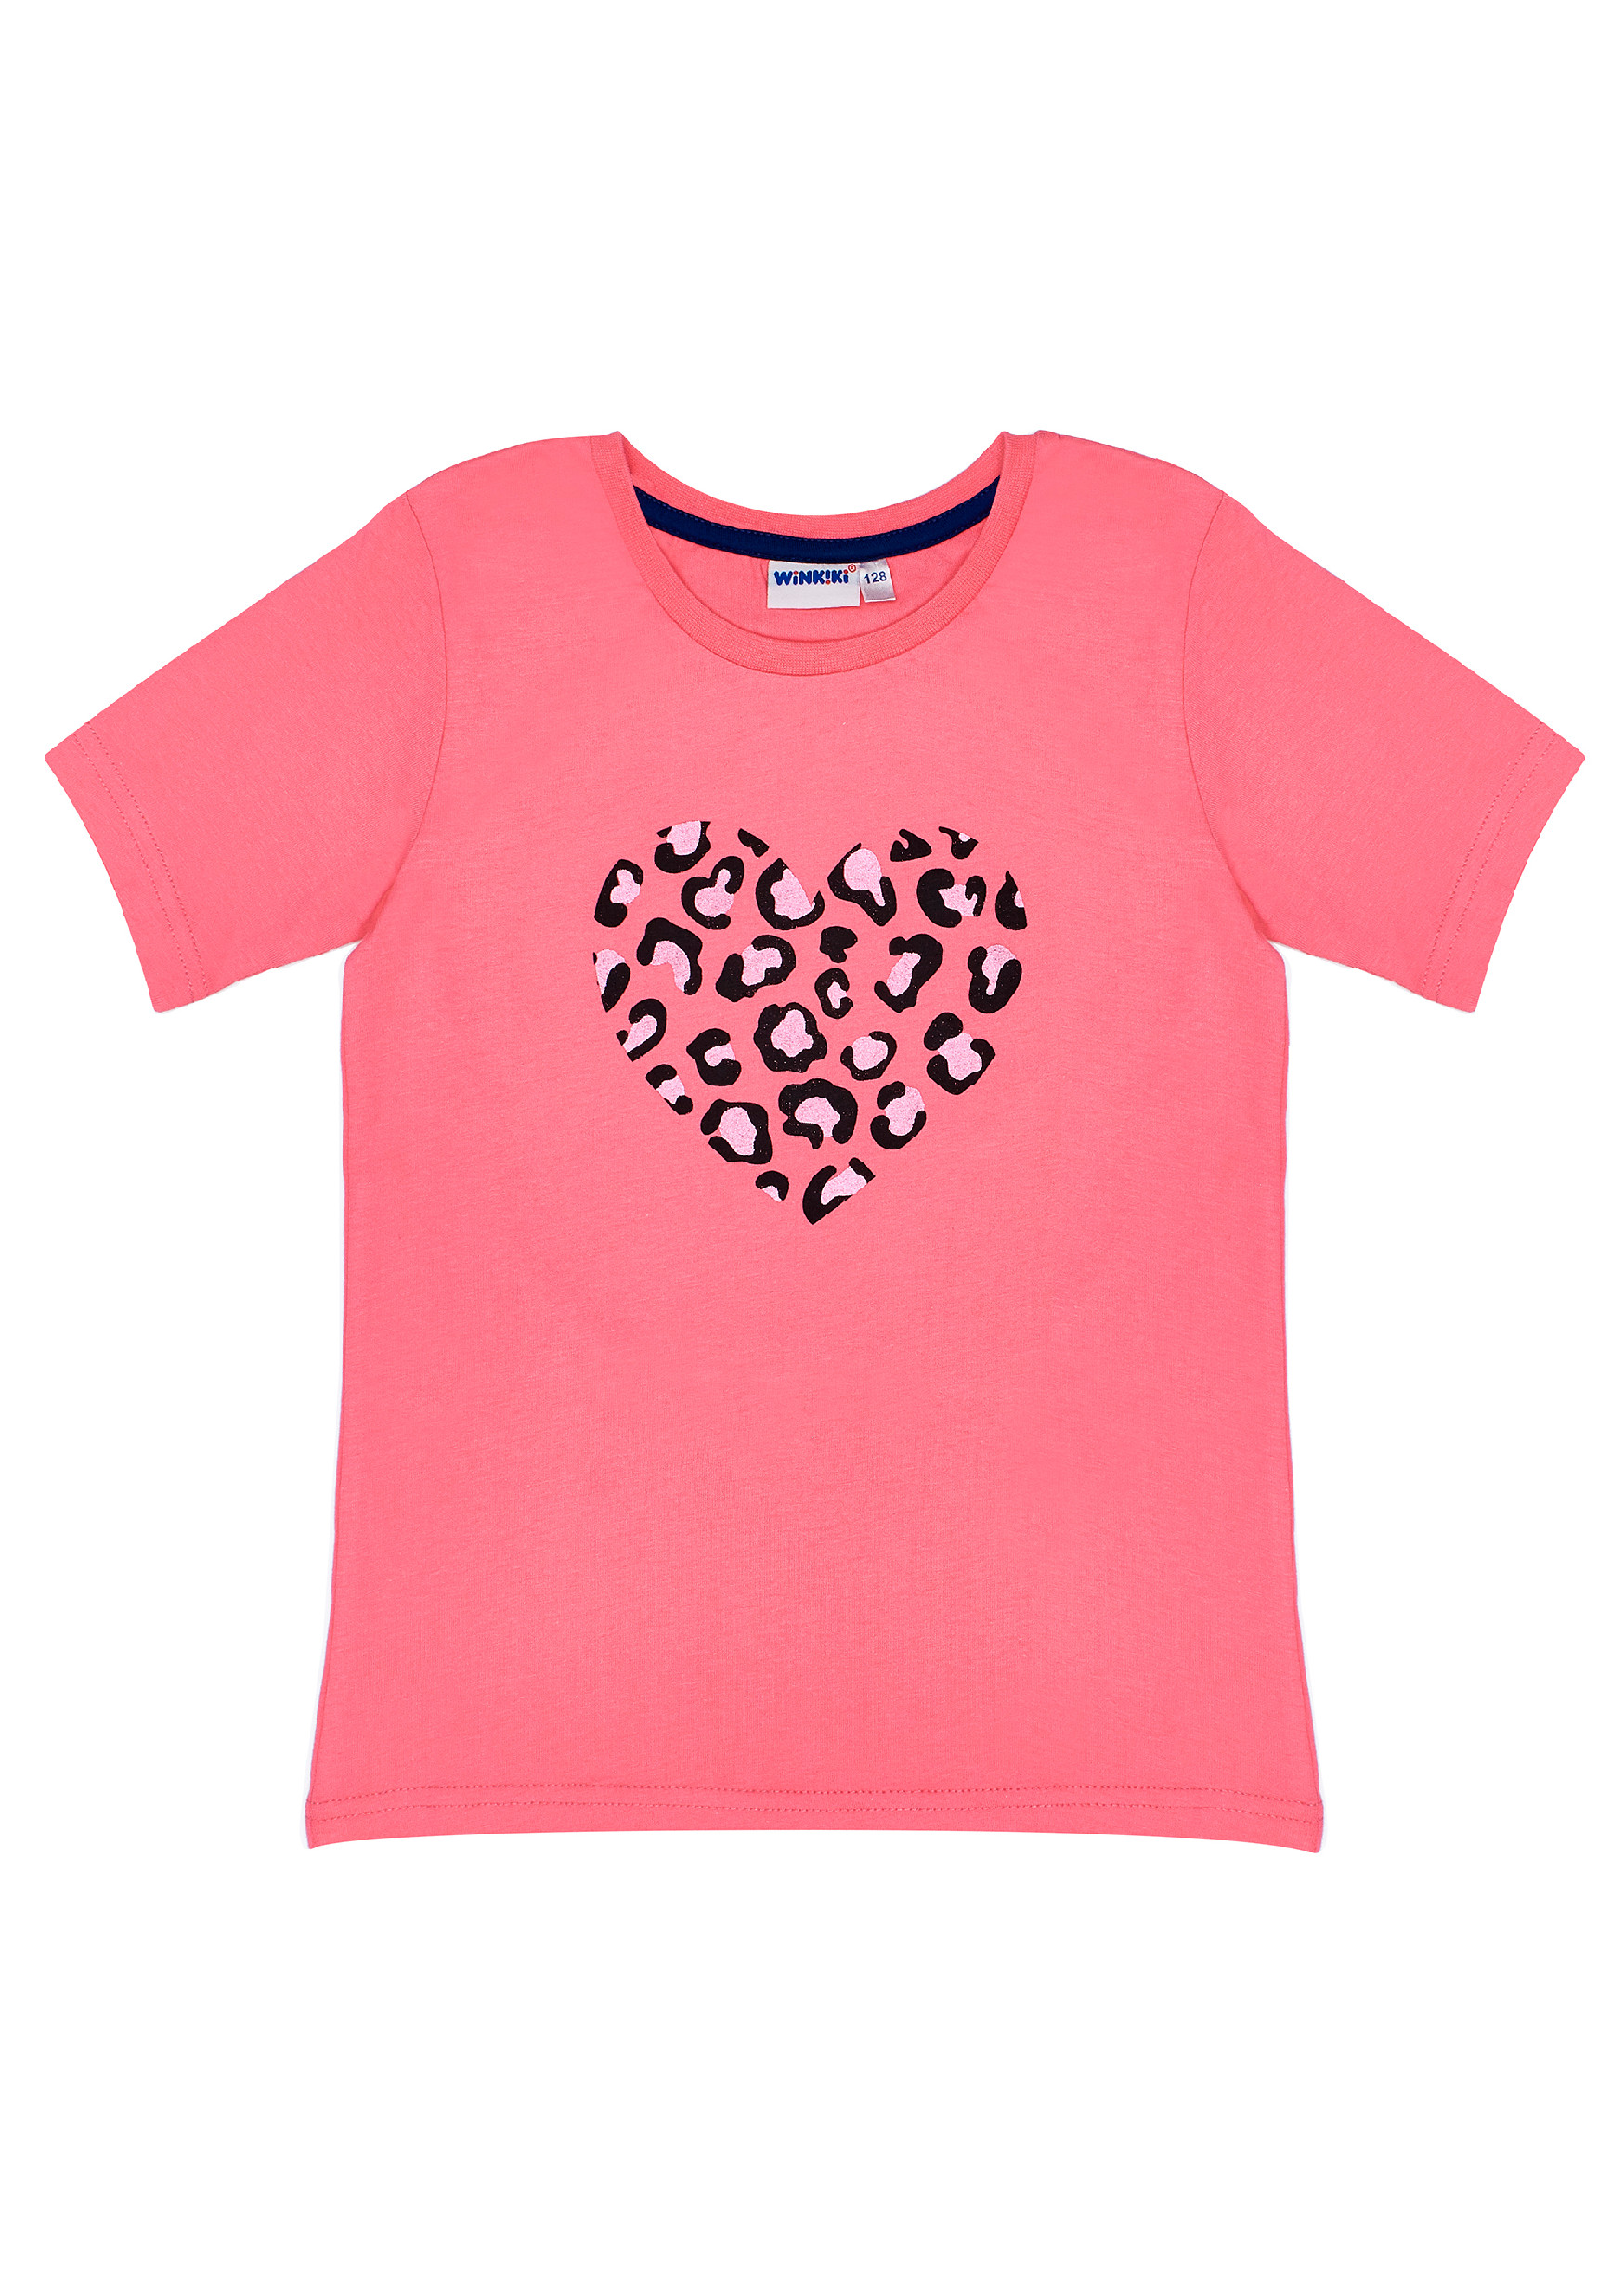 Dívčí tričko - Winkiki WJG 91407, lososová Barva: Lososová, Velikost: 134